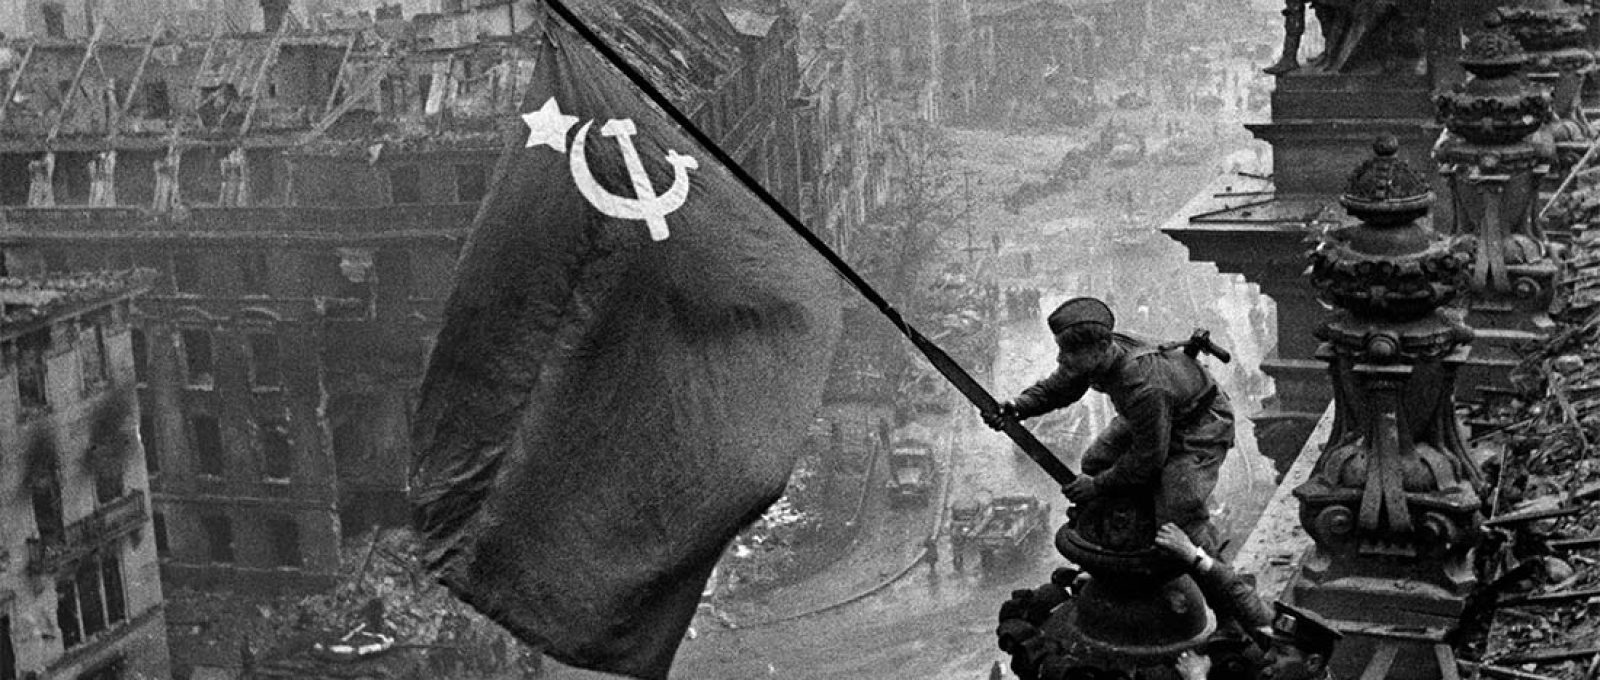 O soldado Abdoulkhakim Ismaïlov levanta a bandeira soviética sobre o Reichstag, imagem que se tornou o símbolo da derrota da Alemanha nazista na Segunda Guerra Mundial (Yevgeny Khaldei/TASS).